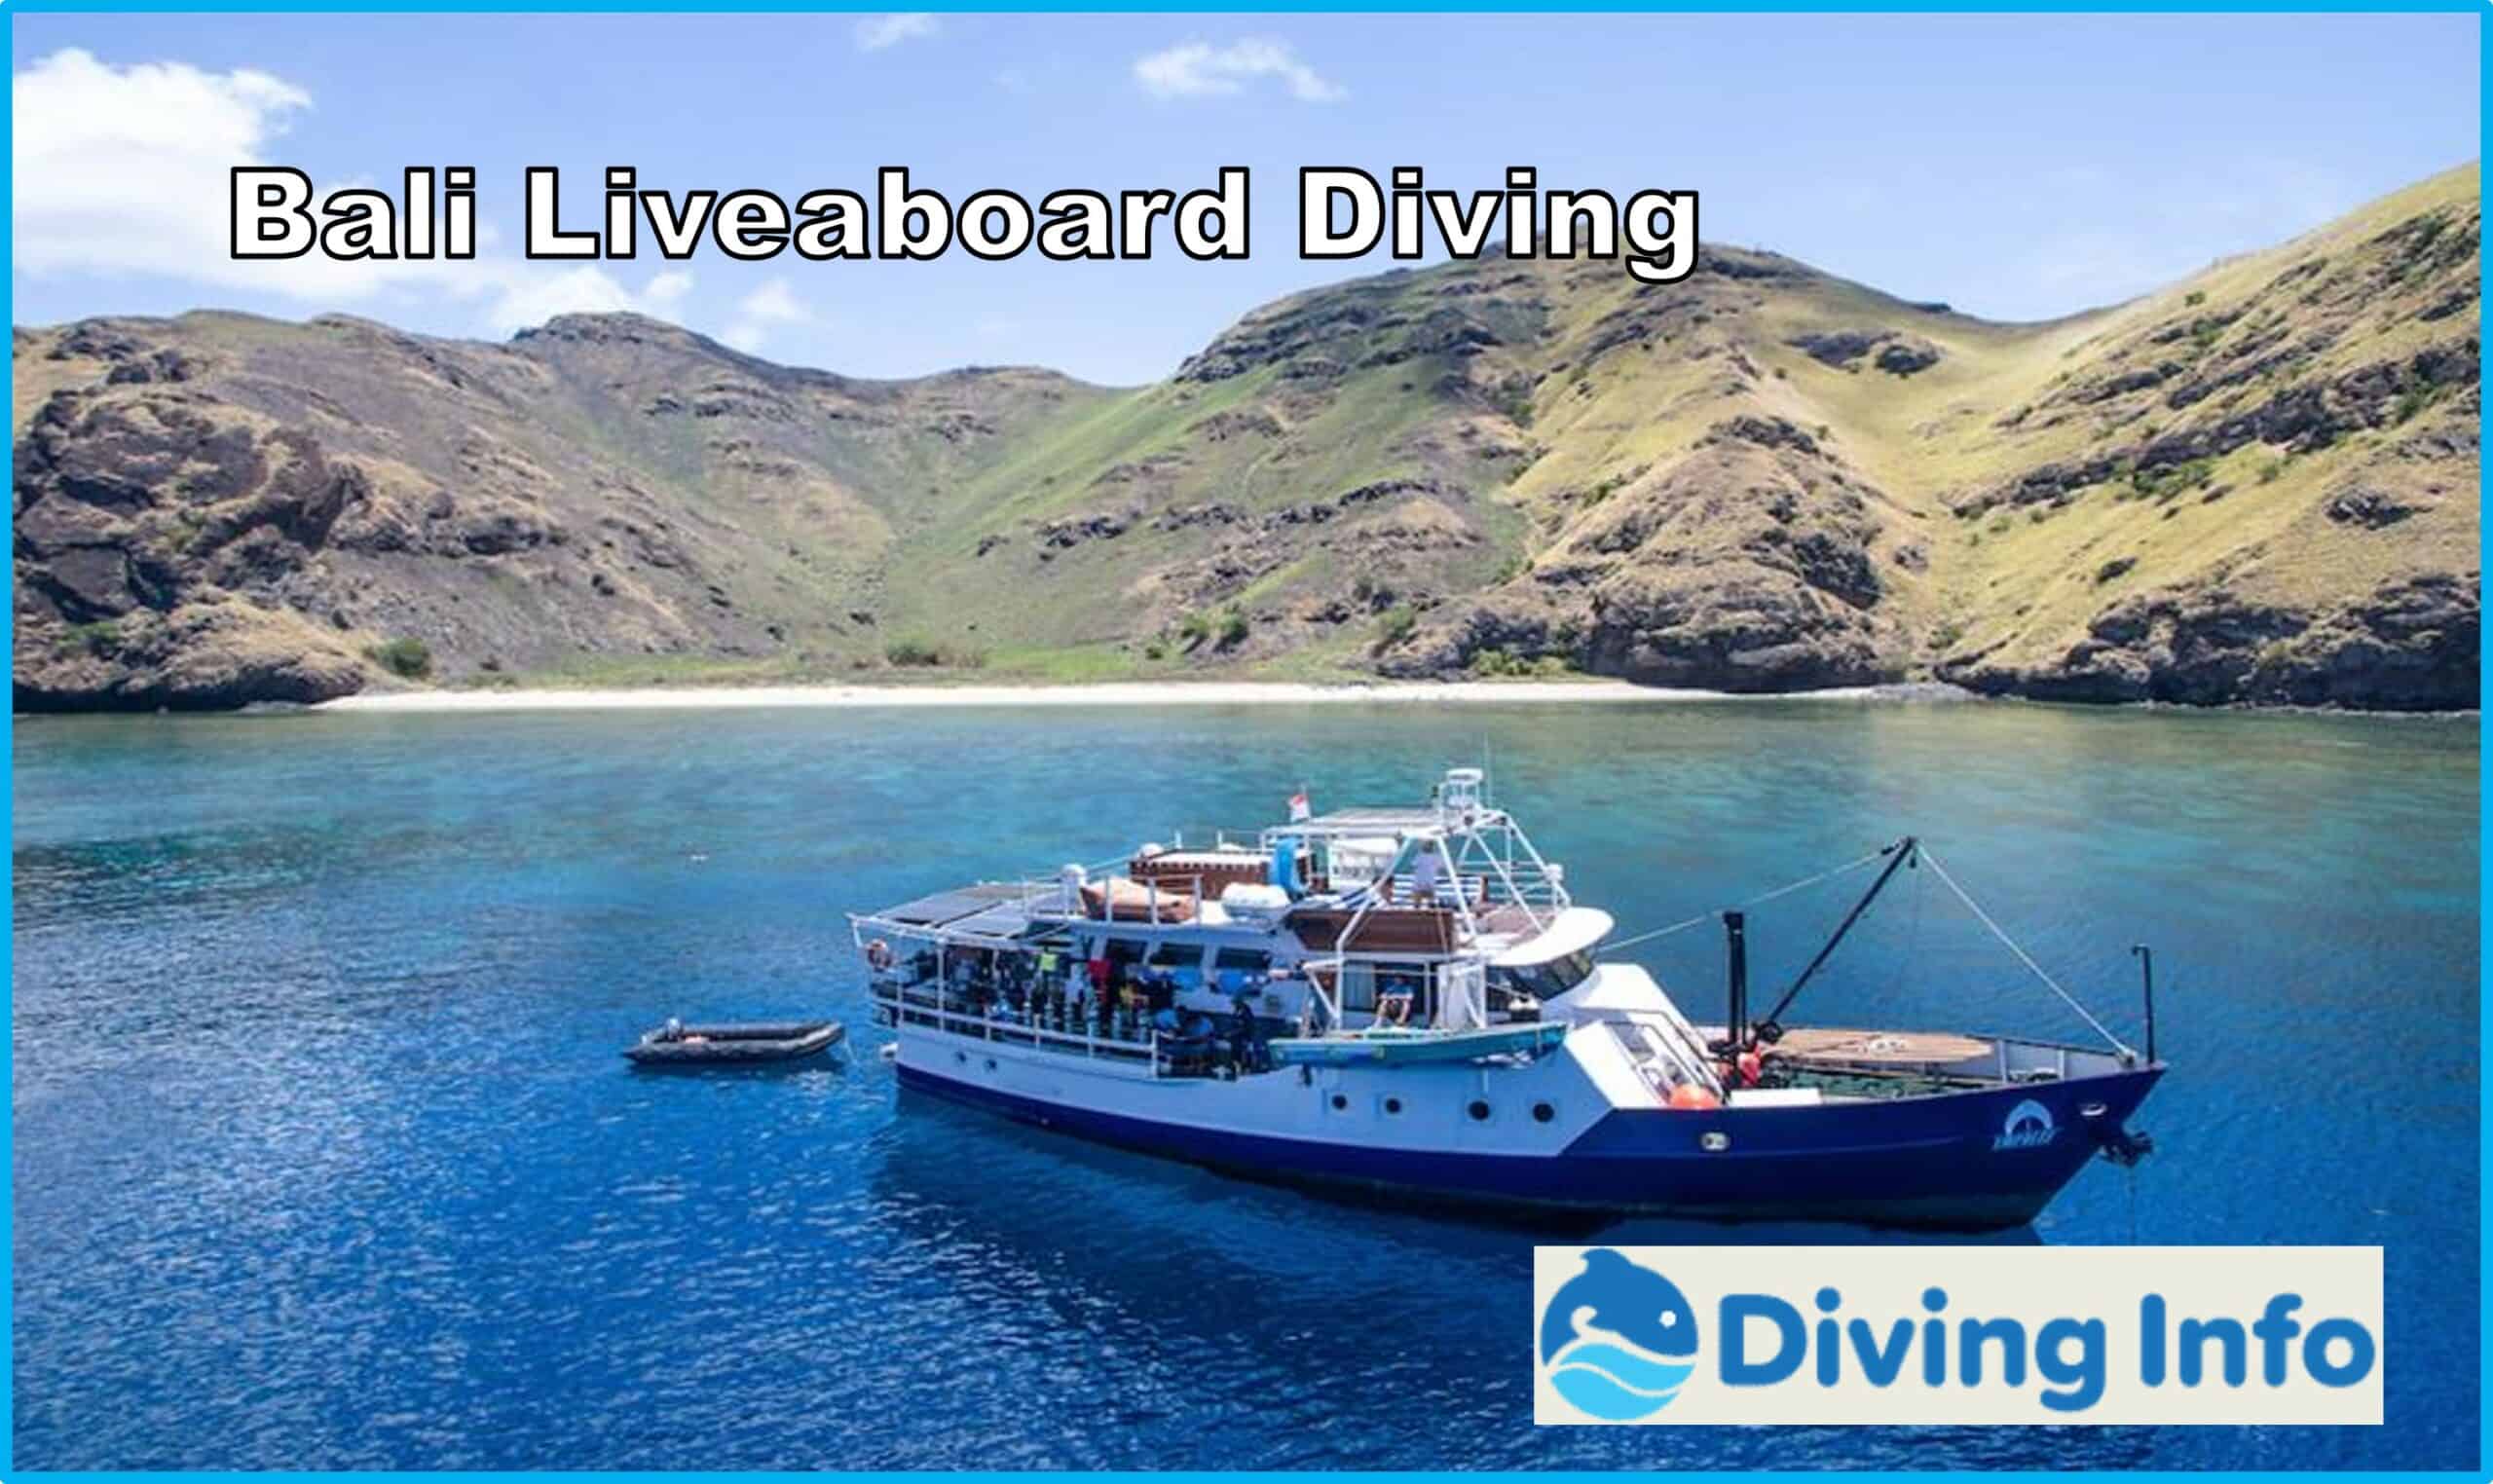 Bali Liveaboard Diving